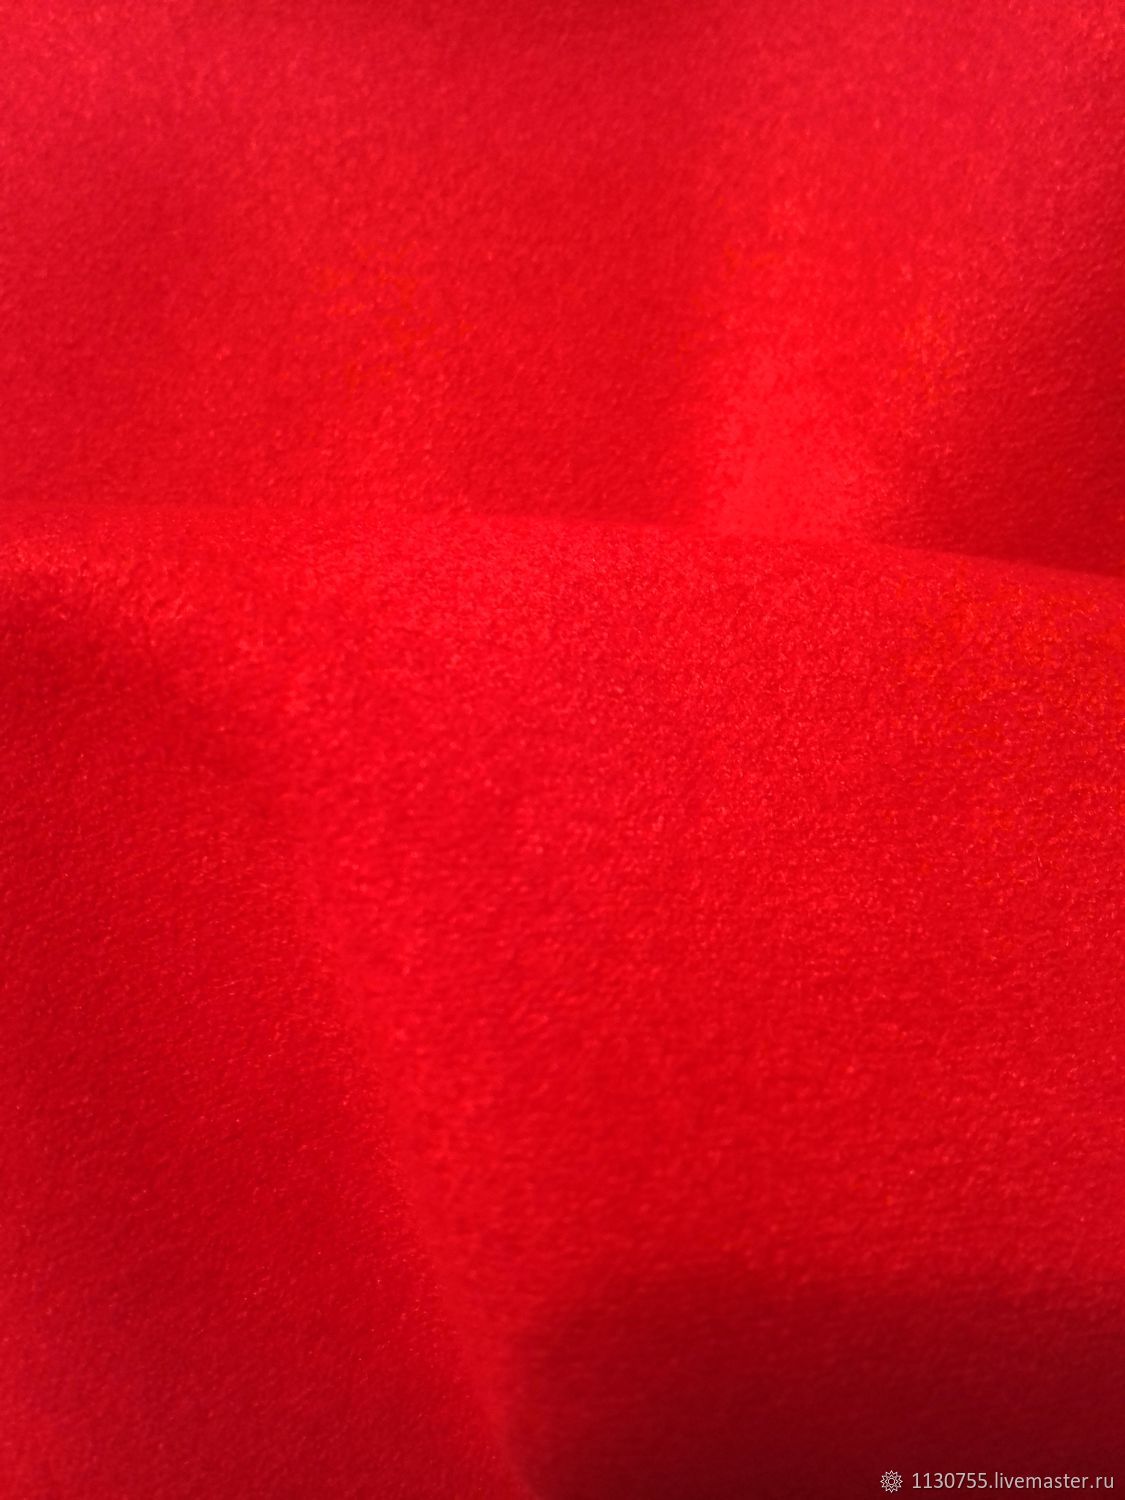 Стрейч красный. Красная ткань. Ткань стрейч красный. Замша на ткани красная. Красное сукно.